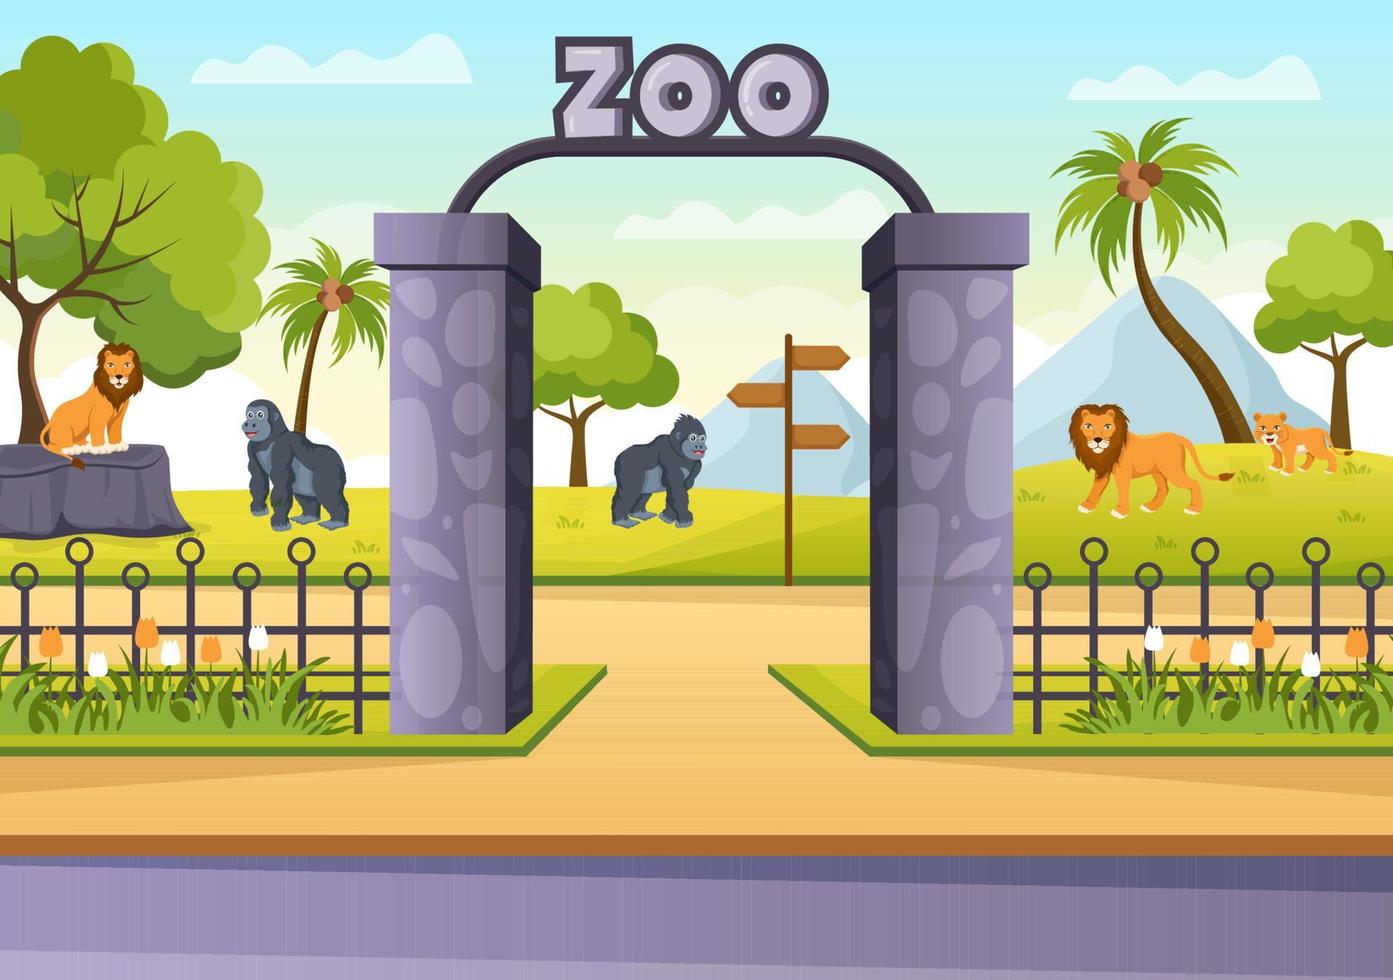 ilustração dos desenhos animados do zoológico com animais de safári elefante, girafa, leão, macaco, panda, zebra e visitantes no território no fundo da floresta vetor